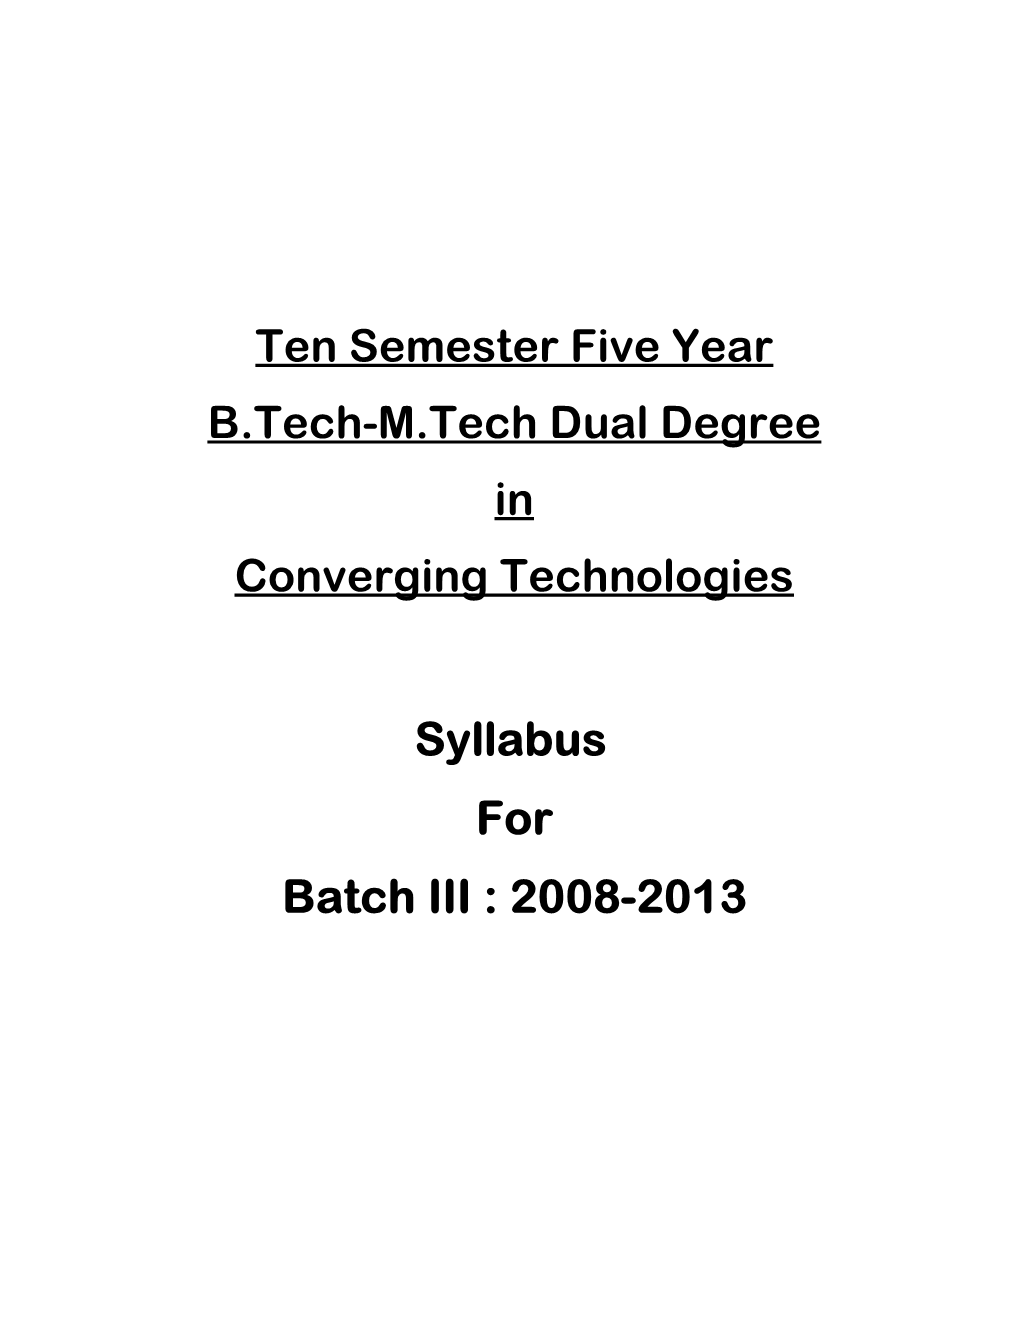 Syllabus for Batch III : 2008-2013